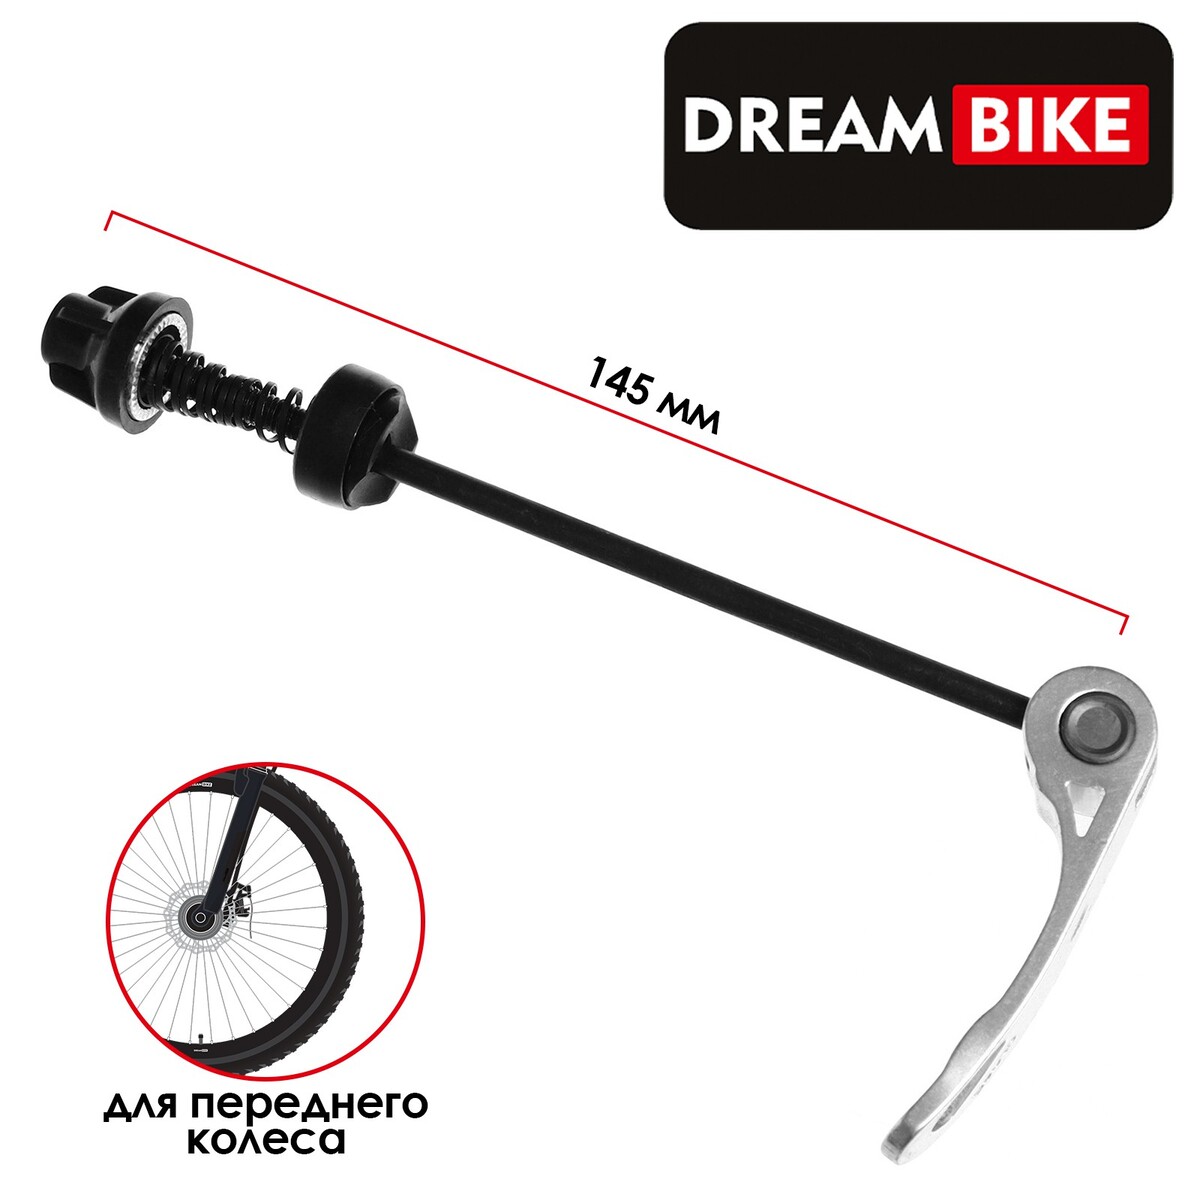 Эксцентрик для переднего колеса dream bike, м5x145мм, цвет серебристый, Dream Bike